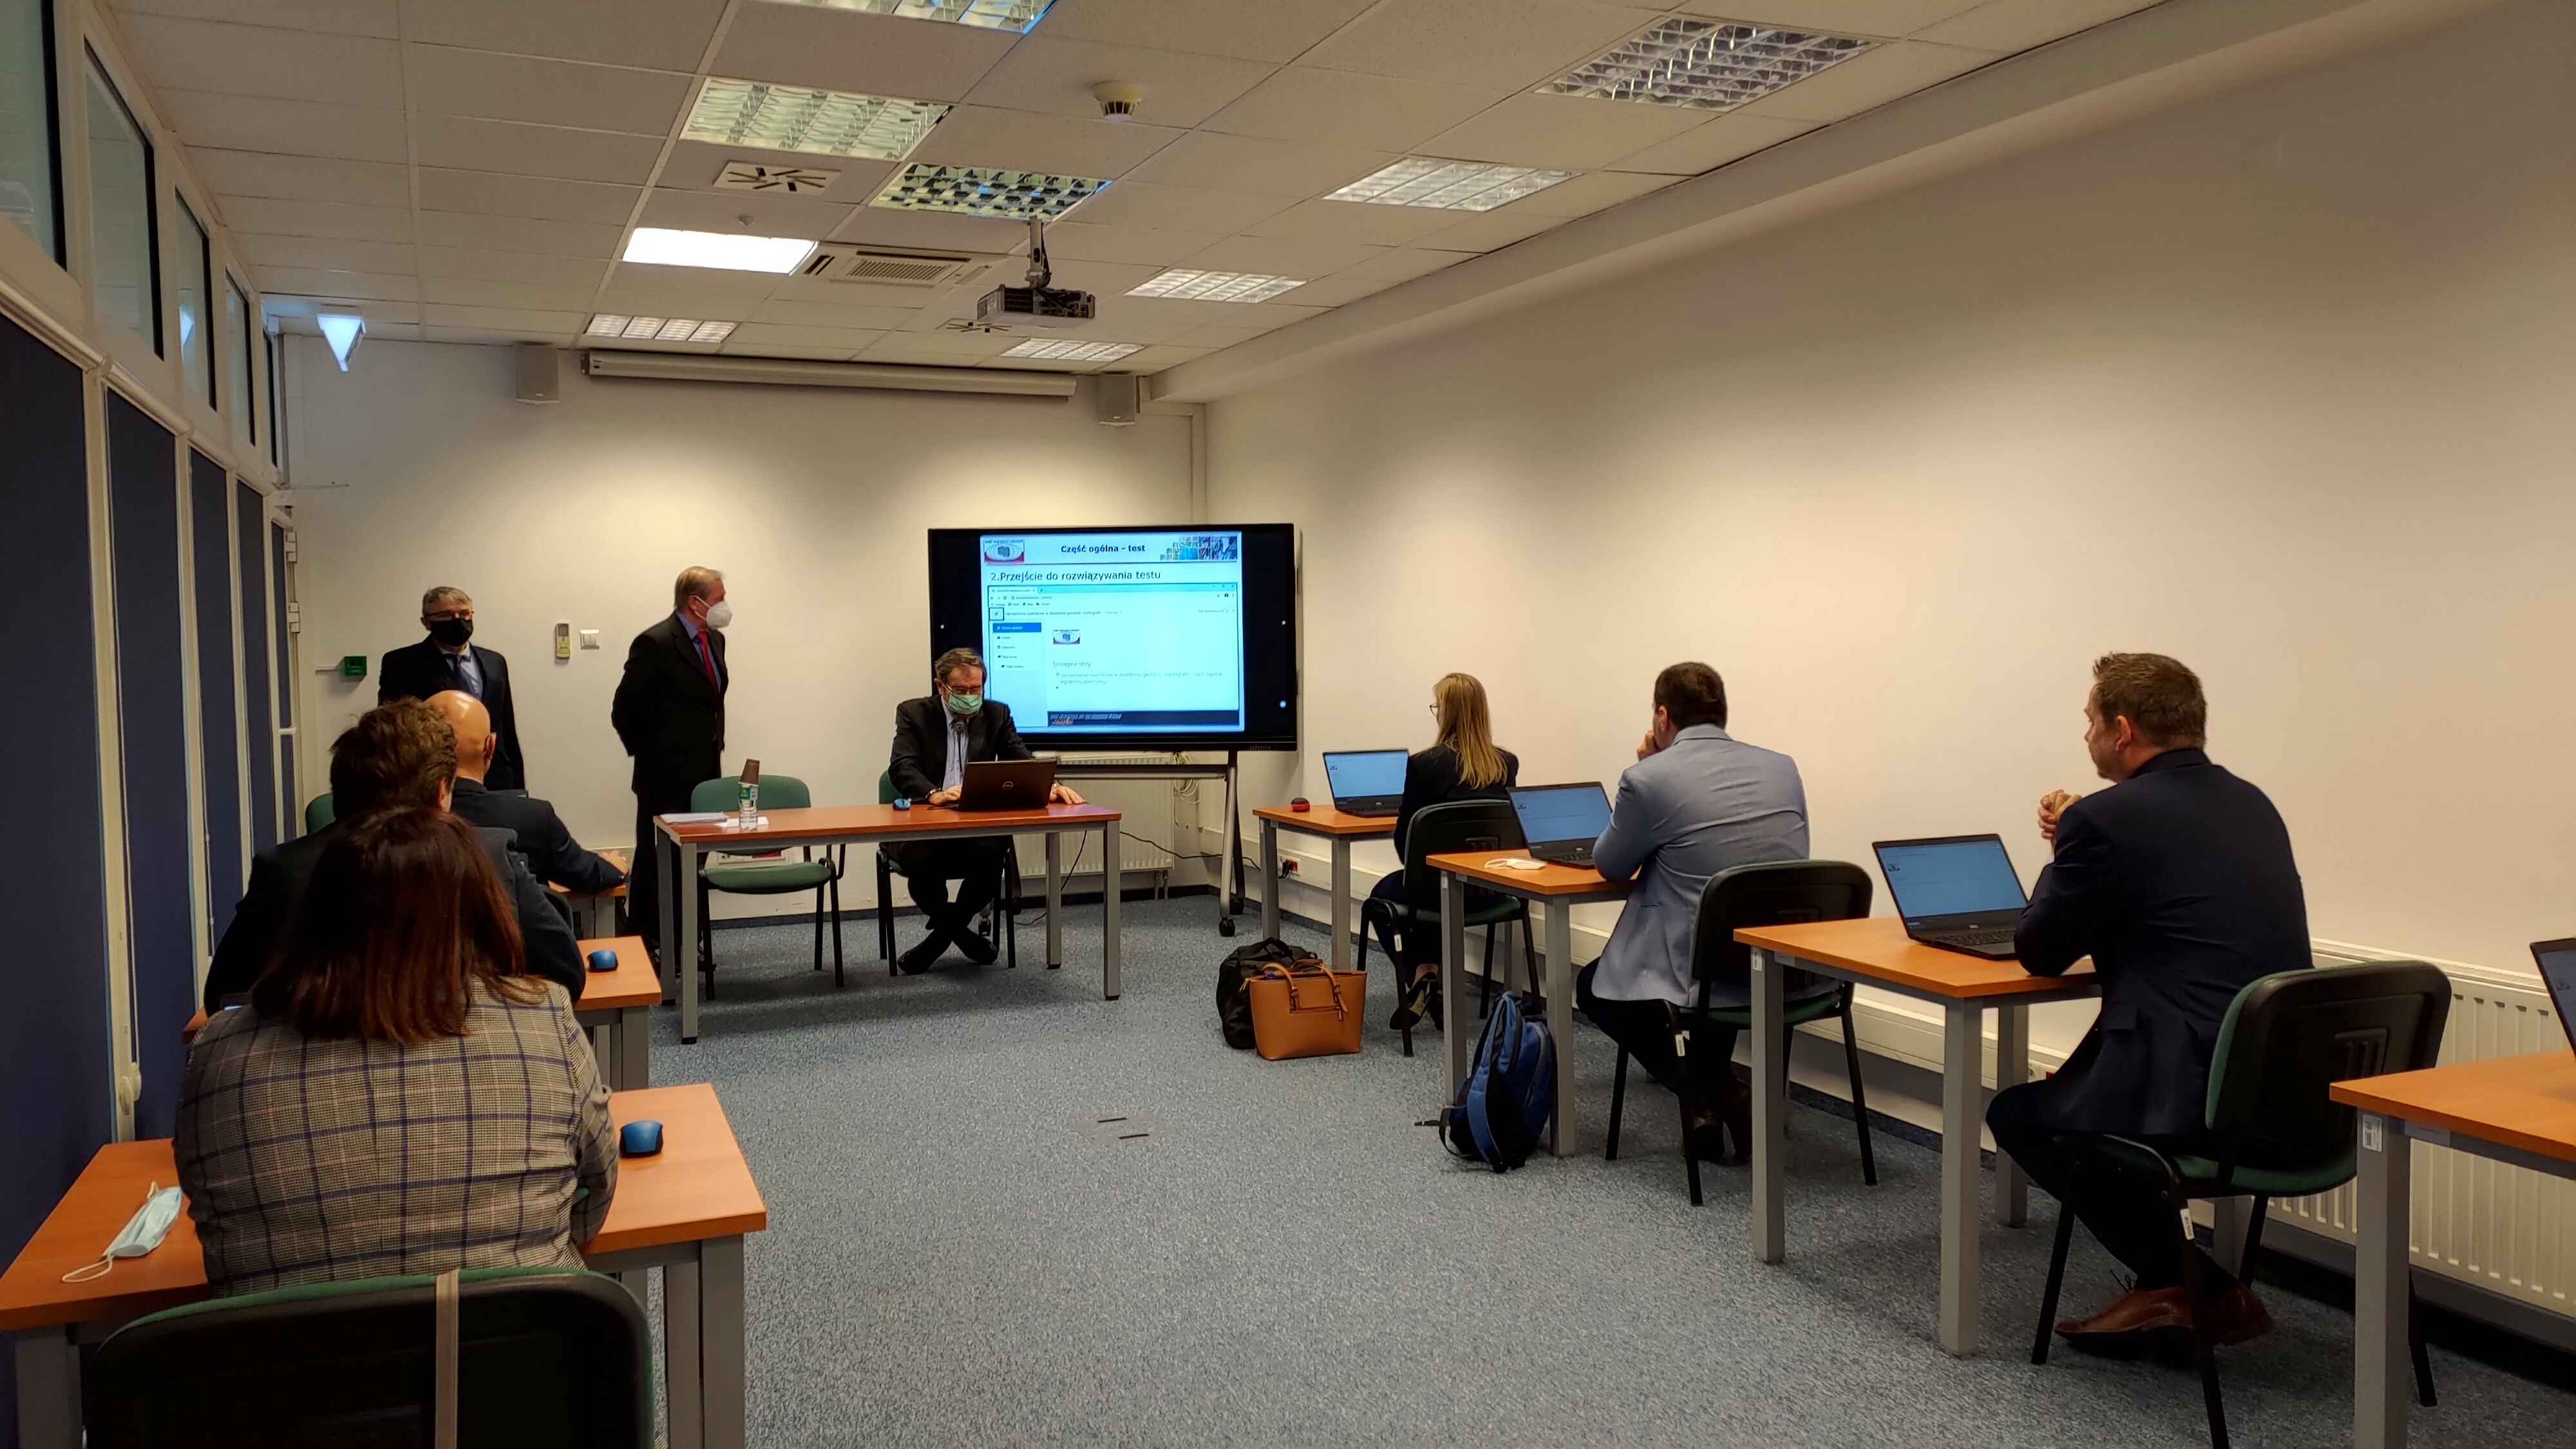 Zdjęcie przedstawia salę egzaminacyjną z członkami Komisji egzaminacyjnej i osobami przystępującymi do egzaminu siedzącymi pojedynczo przed laptopami